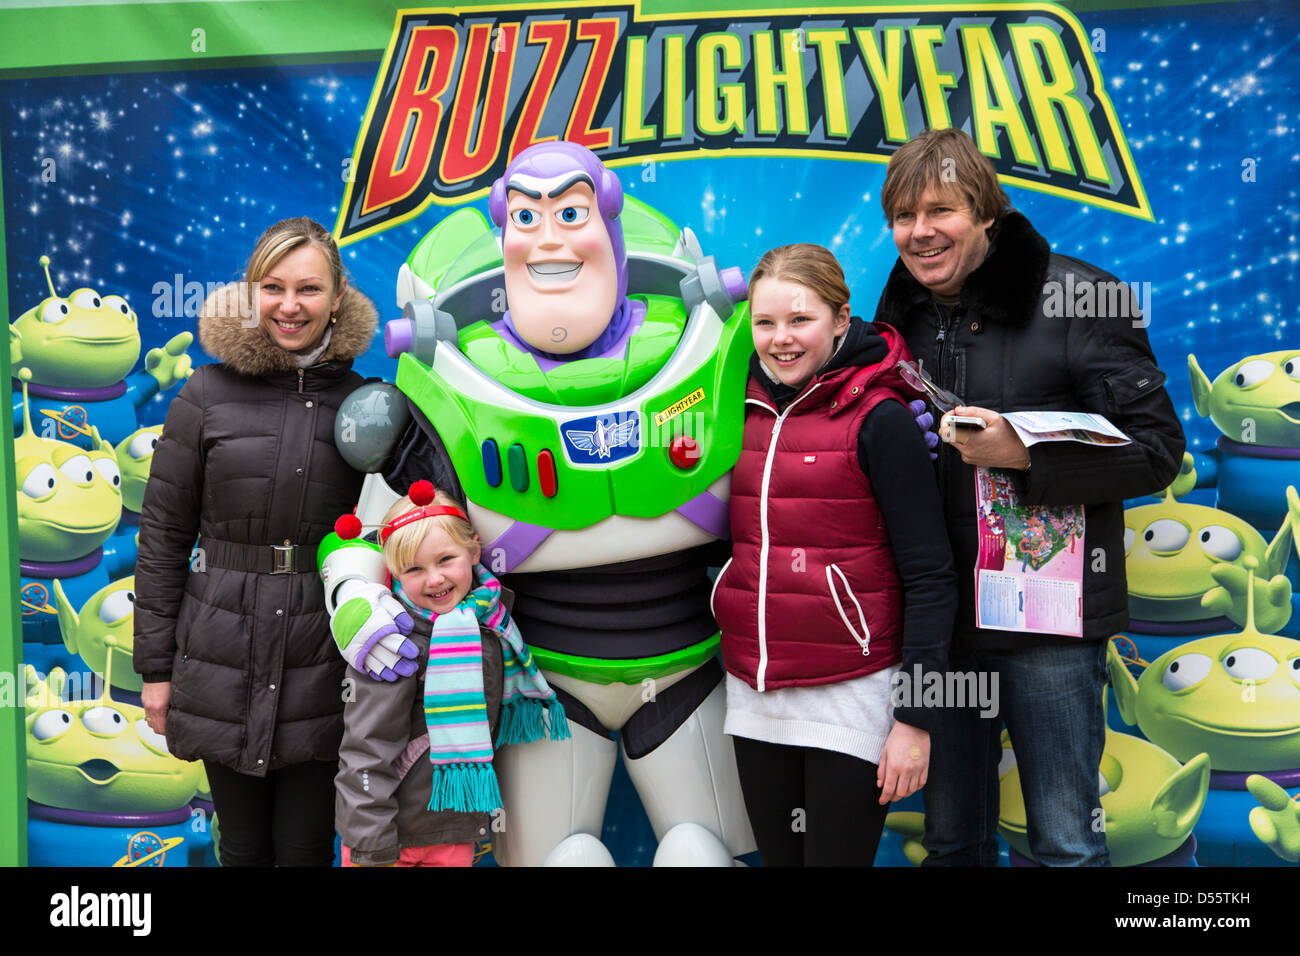 Buzz Lightyear personaje Encuentro y saludo, Disneyland Paris Foto de stock